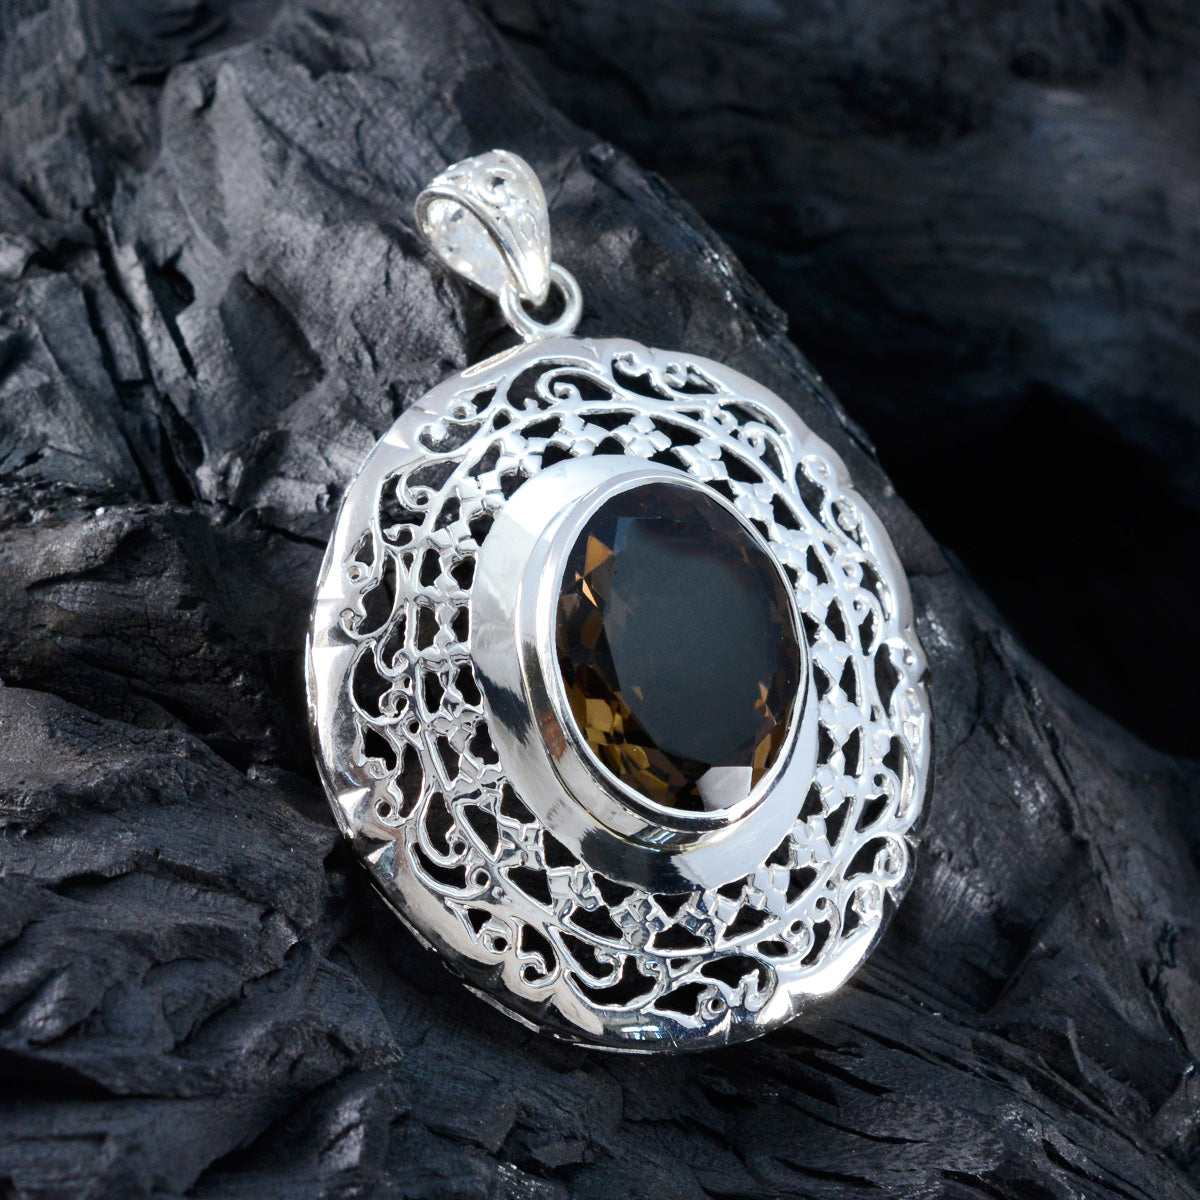 Riyo pierres précieuses attrayantes ovale facettes marron fumé quartz pendentif en argent massif cadeau pour le vendredi saint